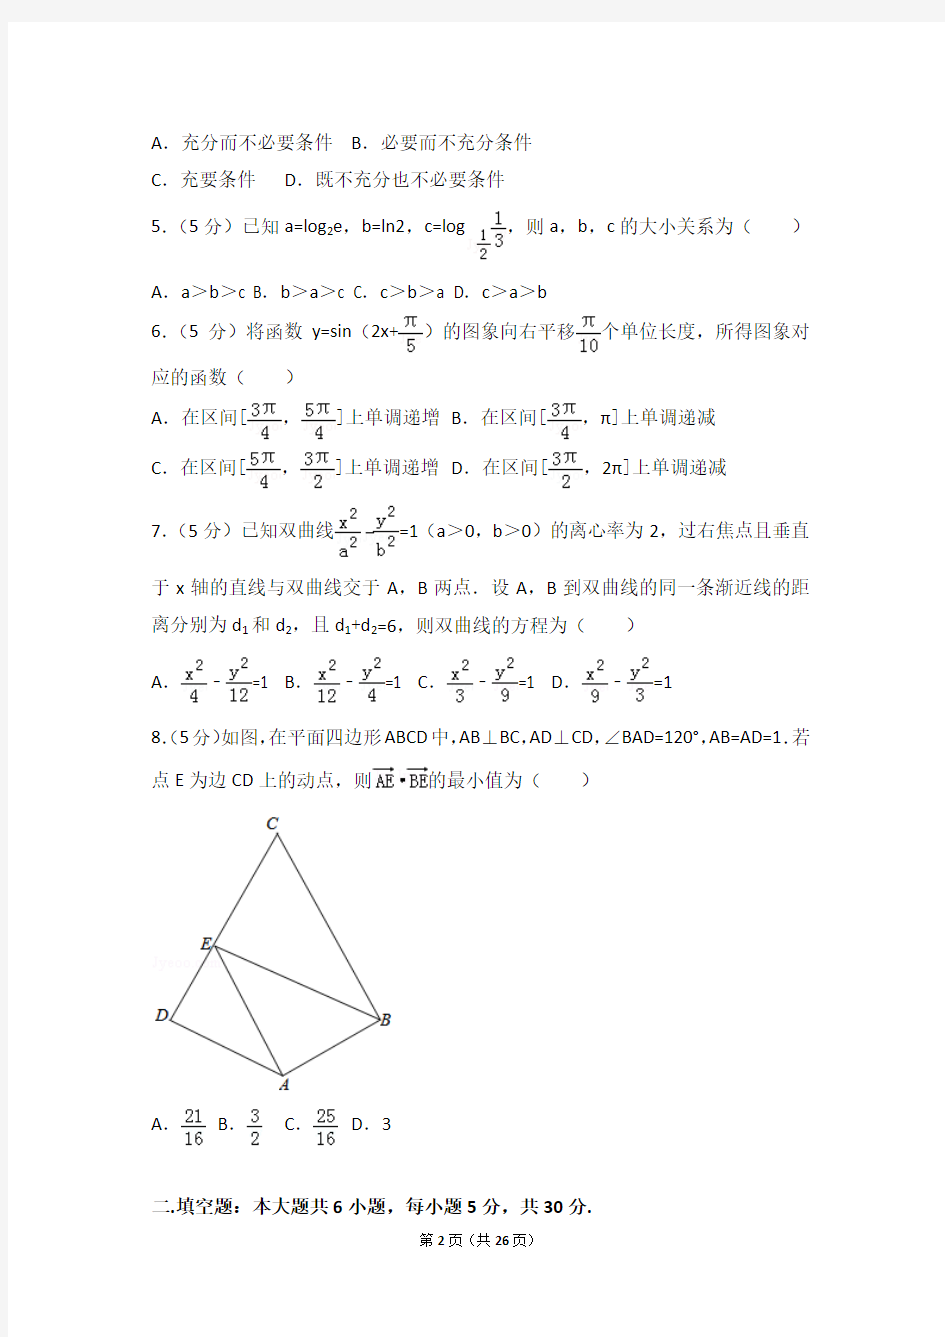 2018年天津市高考数学试卷(理科)(含详细答案解析)